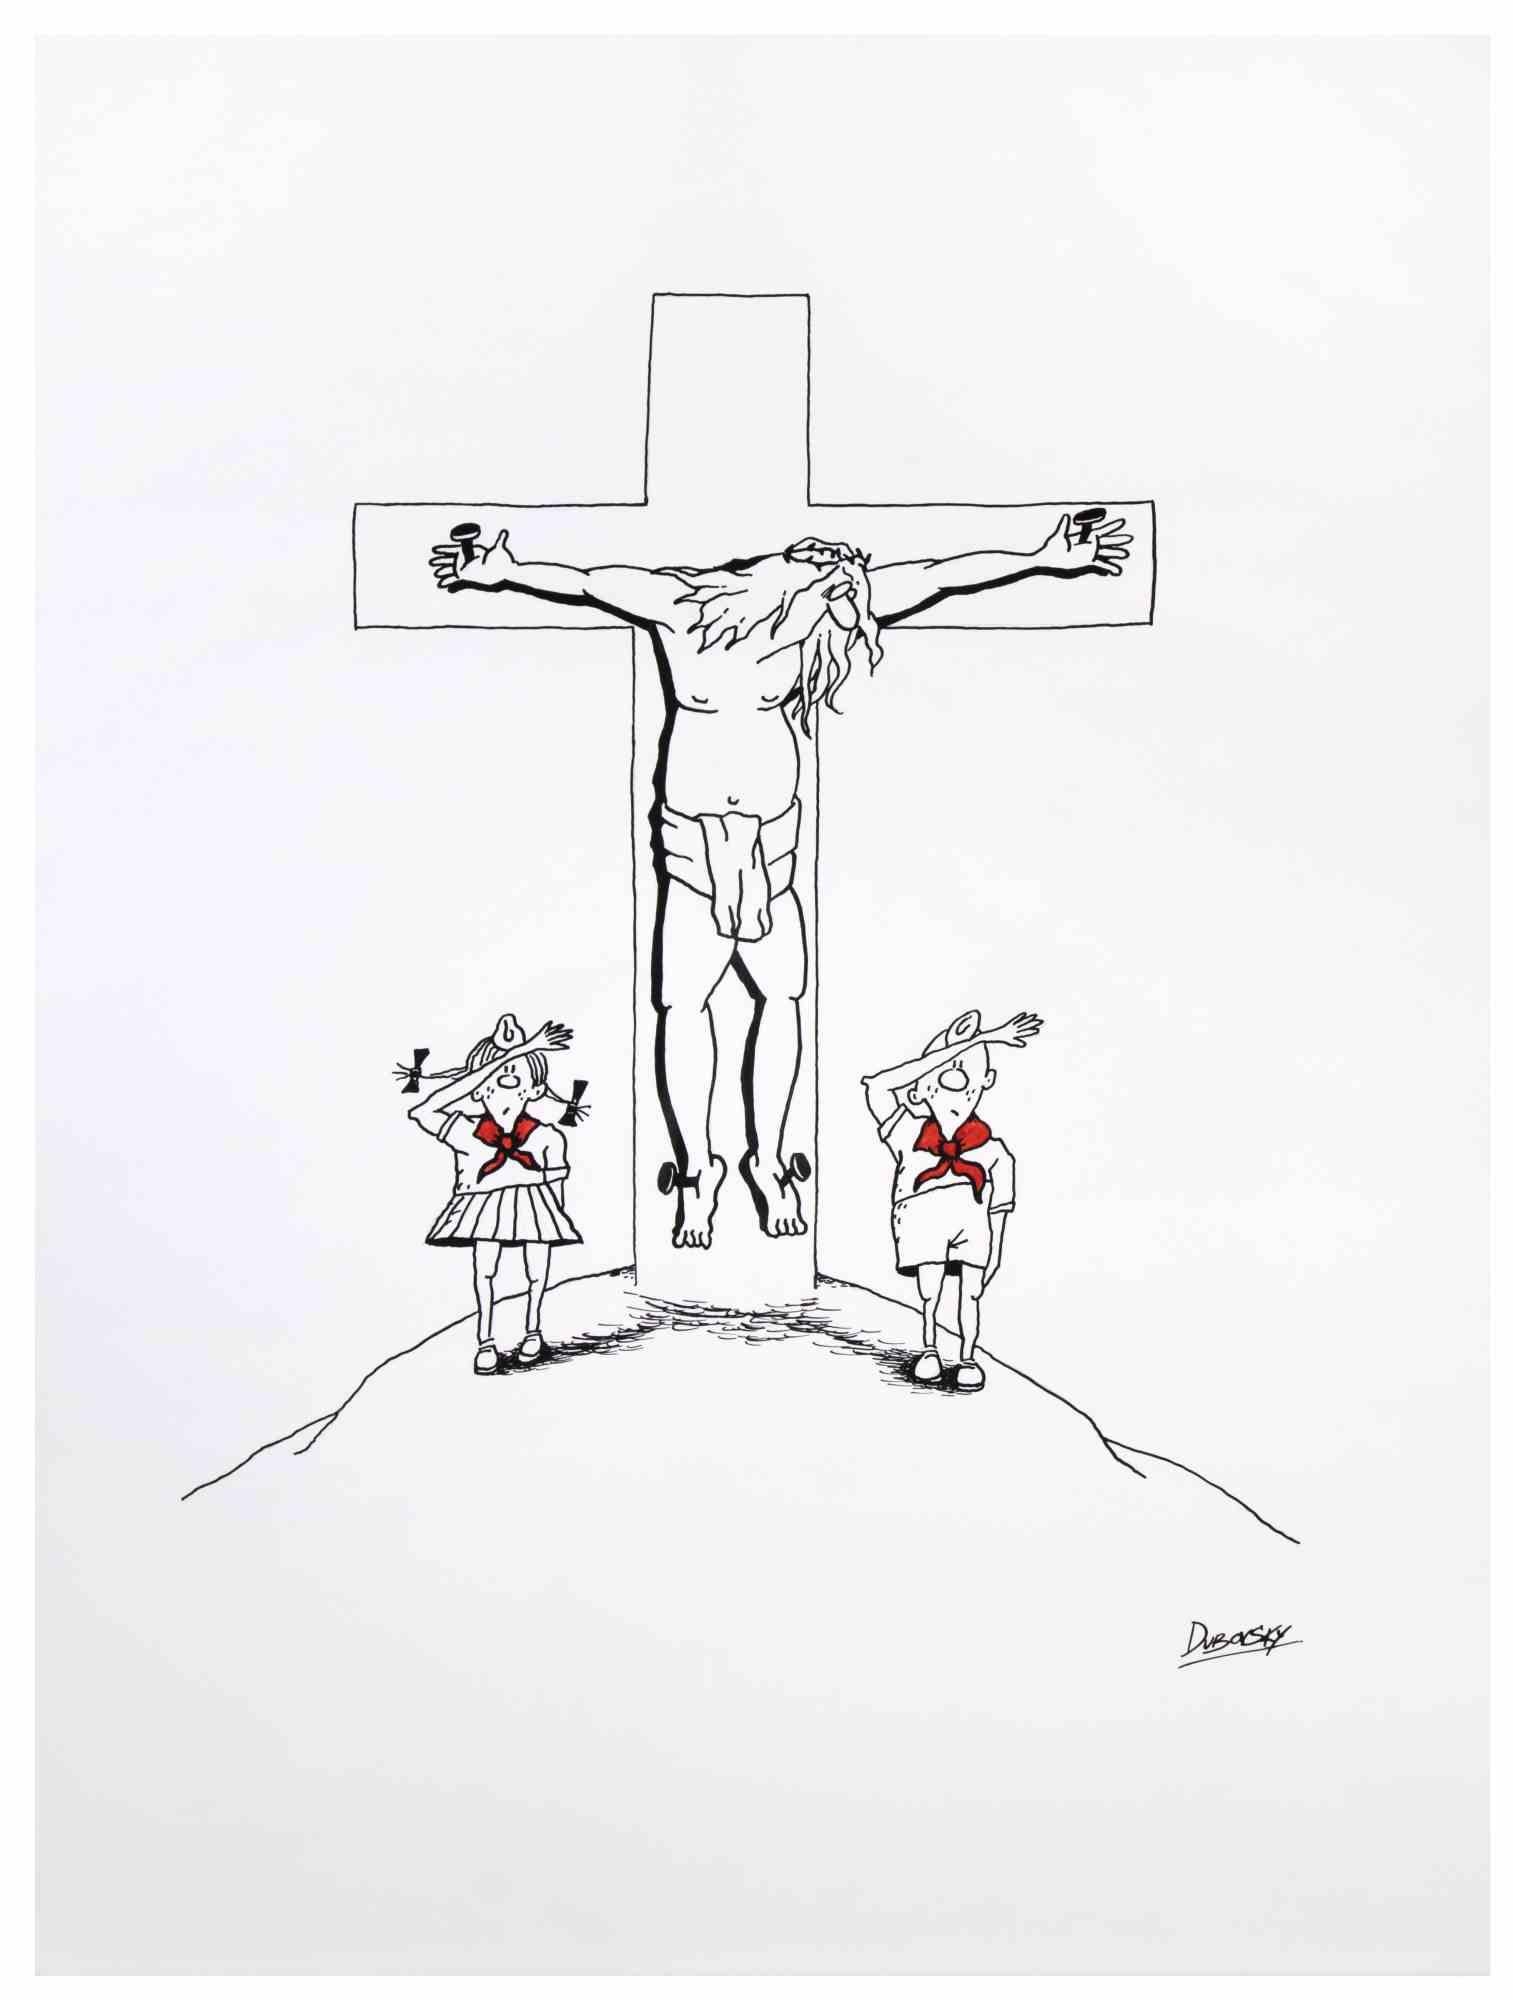 Crucifixion ist ein zeichnerisches Kunstwerk, das Alexander Dubovsky in den 1980er Jahren realisierte.

Aquarell und Tuschezeichnung auf Papier.

Rechts unten handsigniert.

Der Erhaltungszustand ist gut.